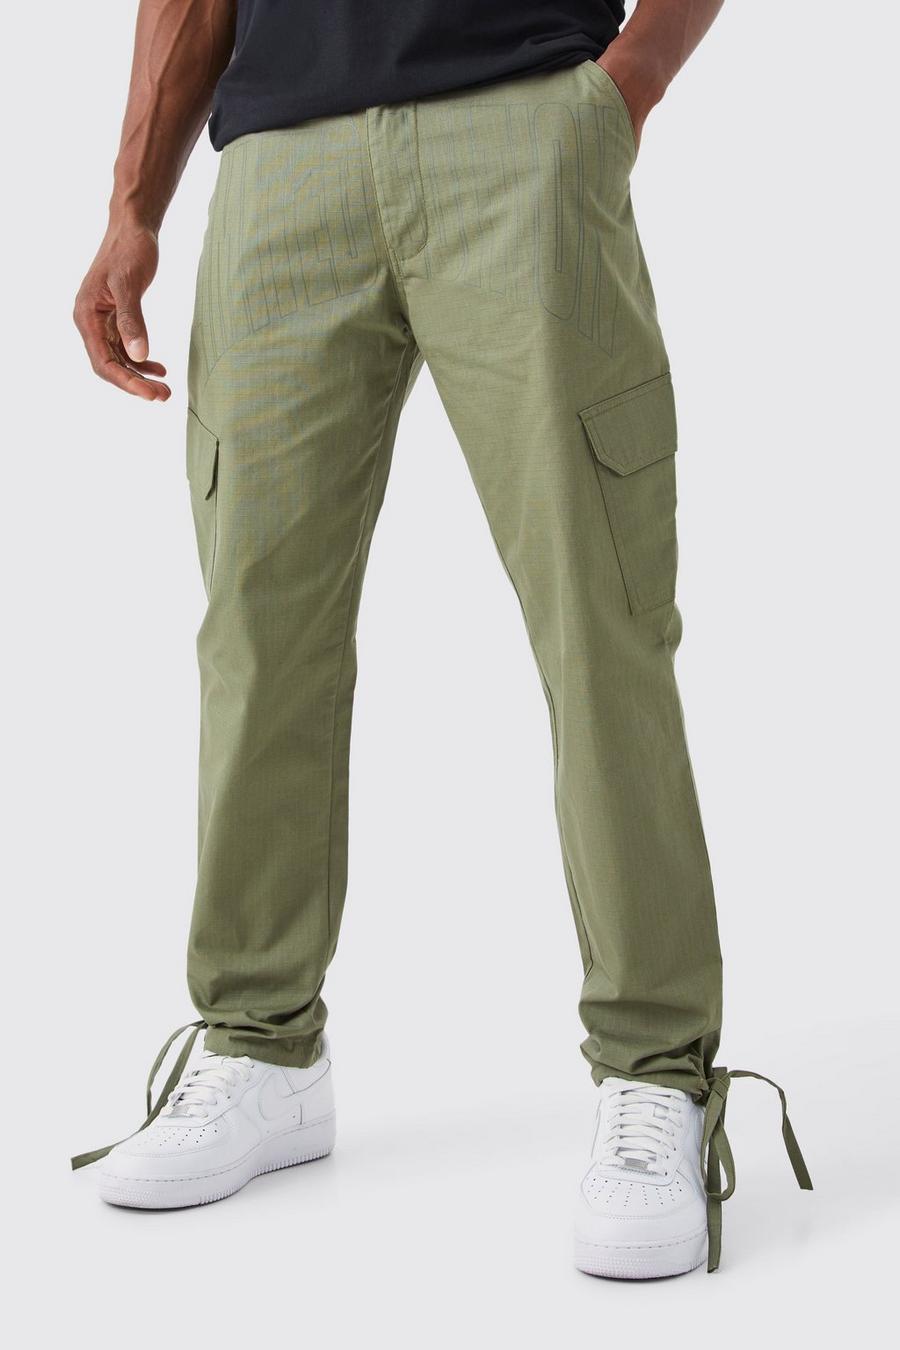 Pantaloni Cargo Slim Fit in nylon ripstop tono su tono, Khaki kaki